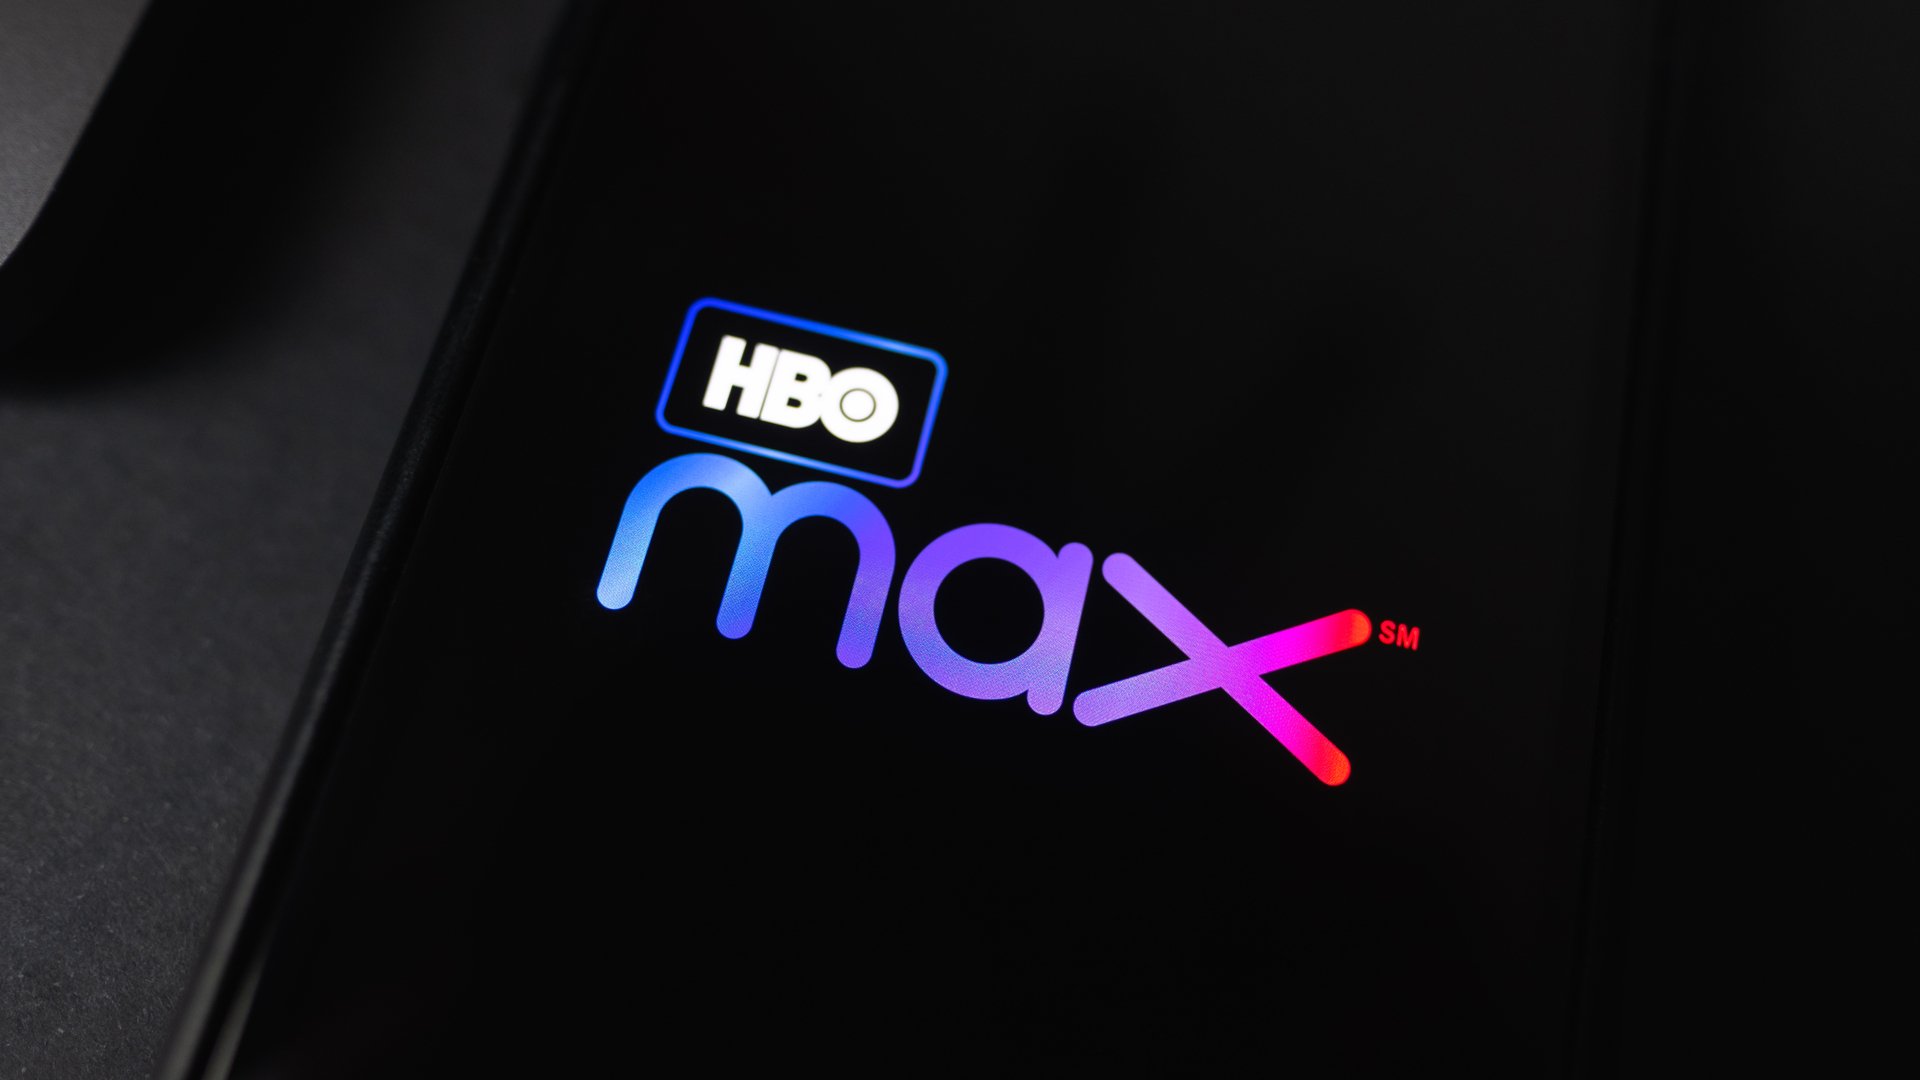 Como assinar a HBO Max com 50% de desconto?